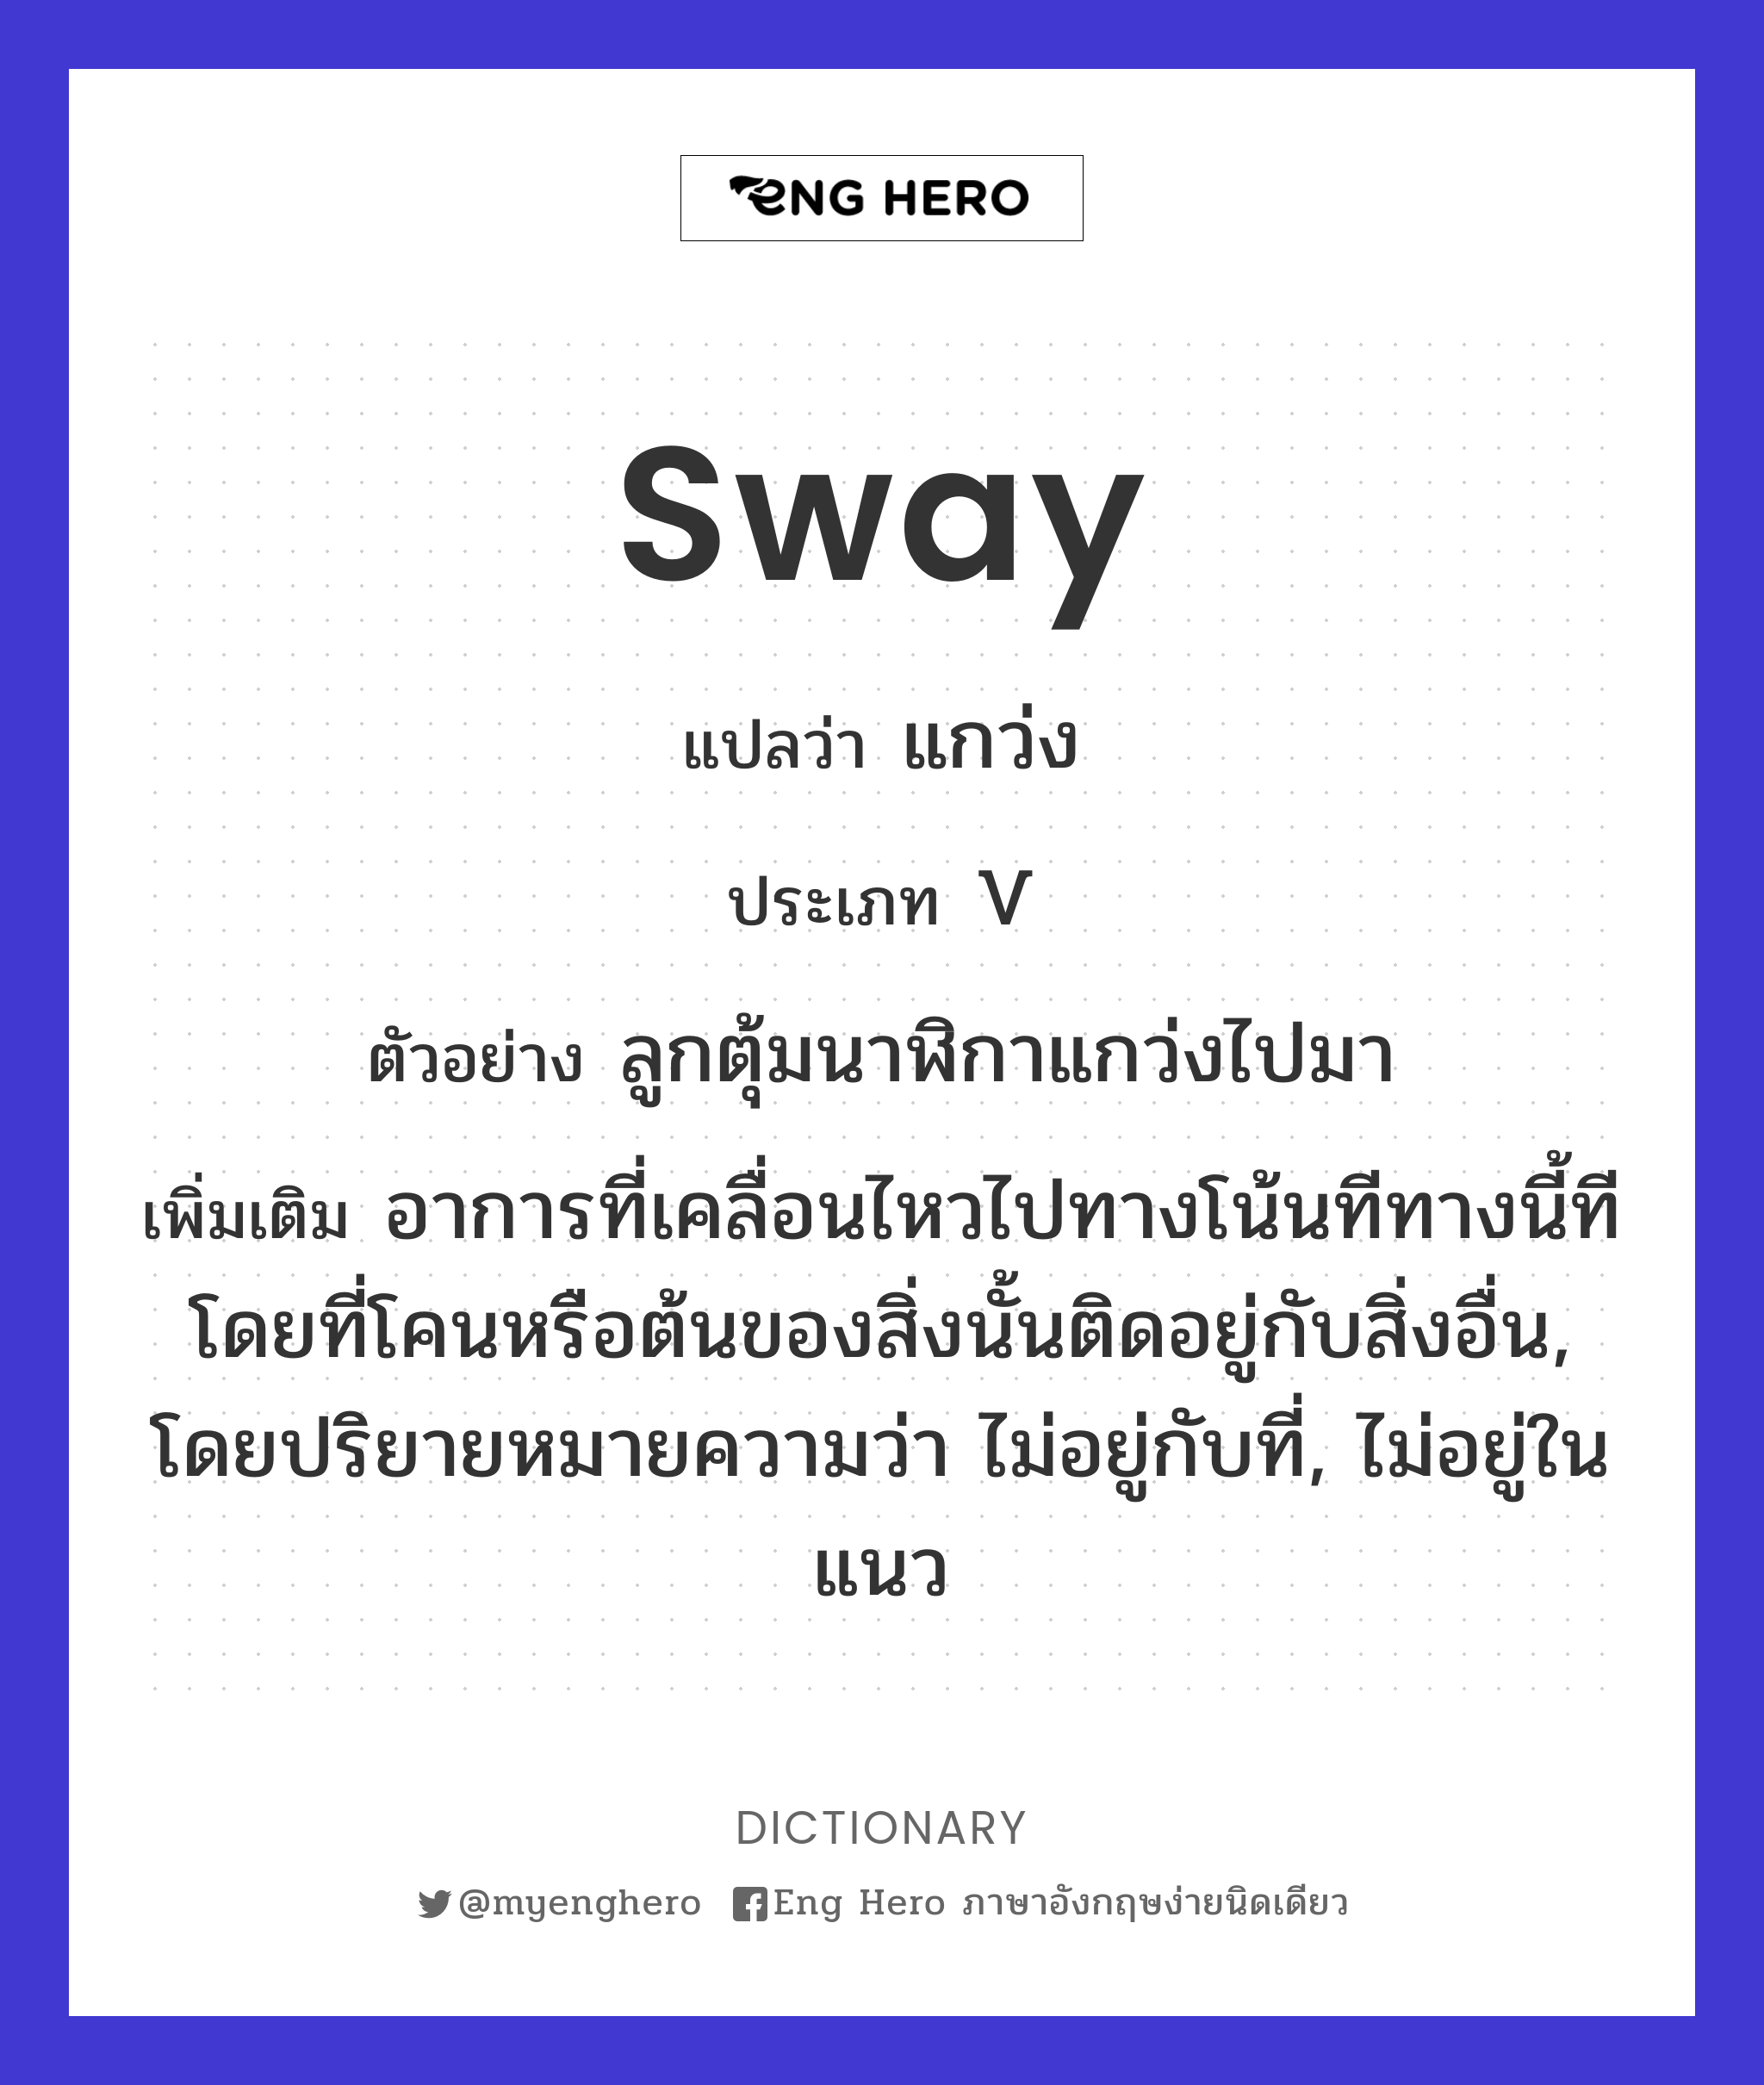 sway